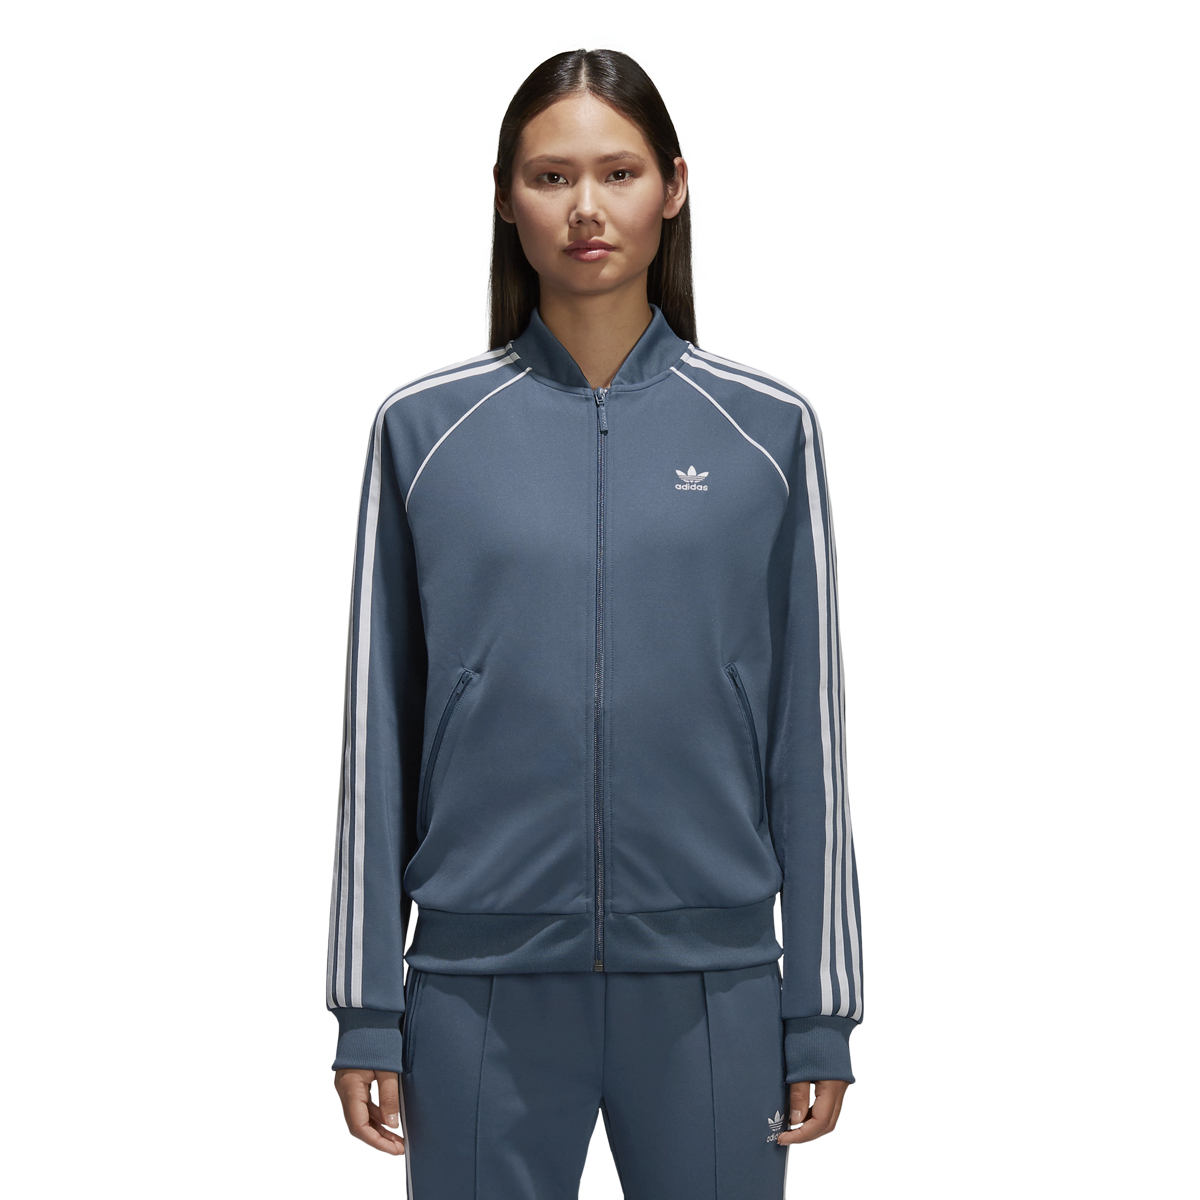 Adidas Originals Superstar Women's Track Top Dark Steeel-White ce2394 | eBay